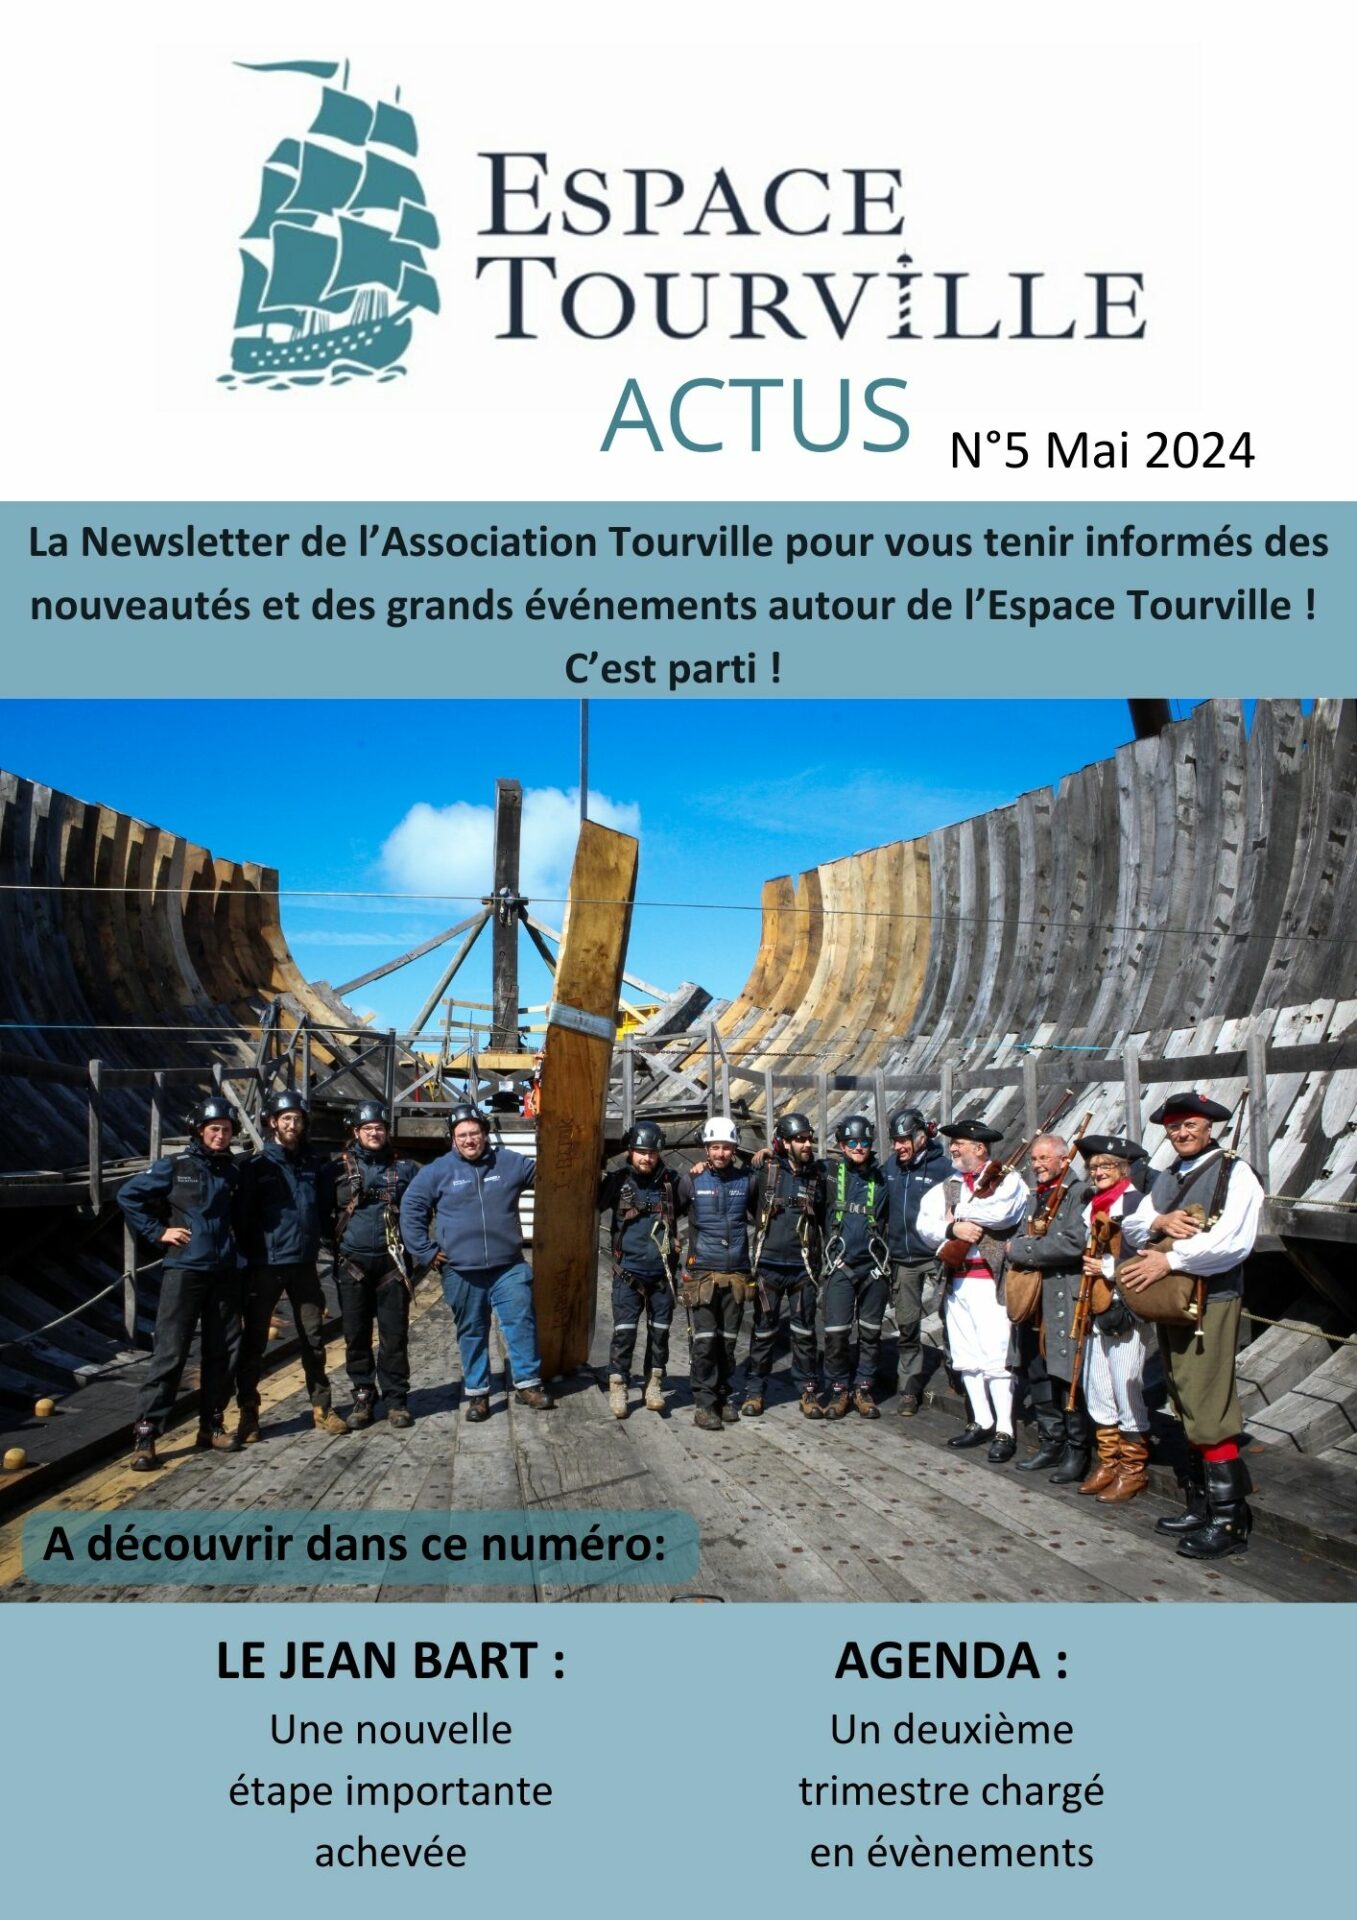 Tourville Actu N°5